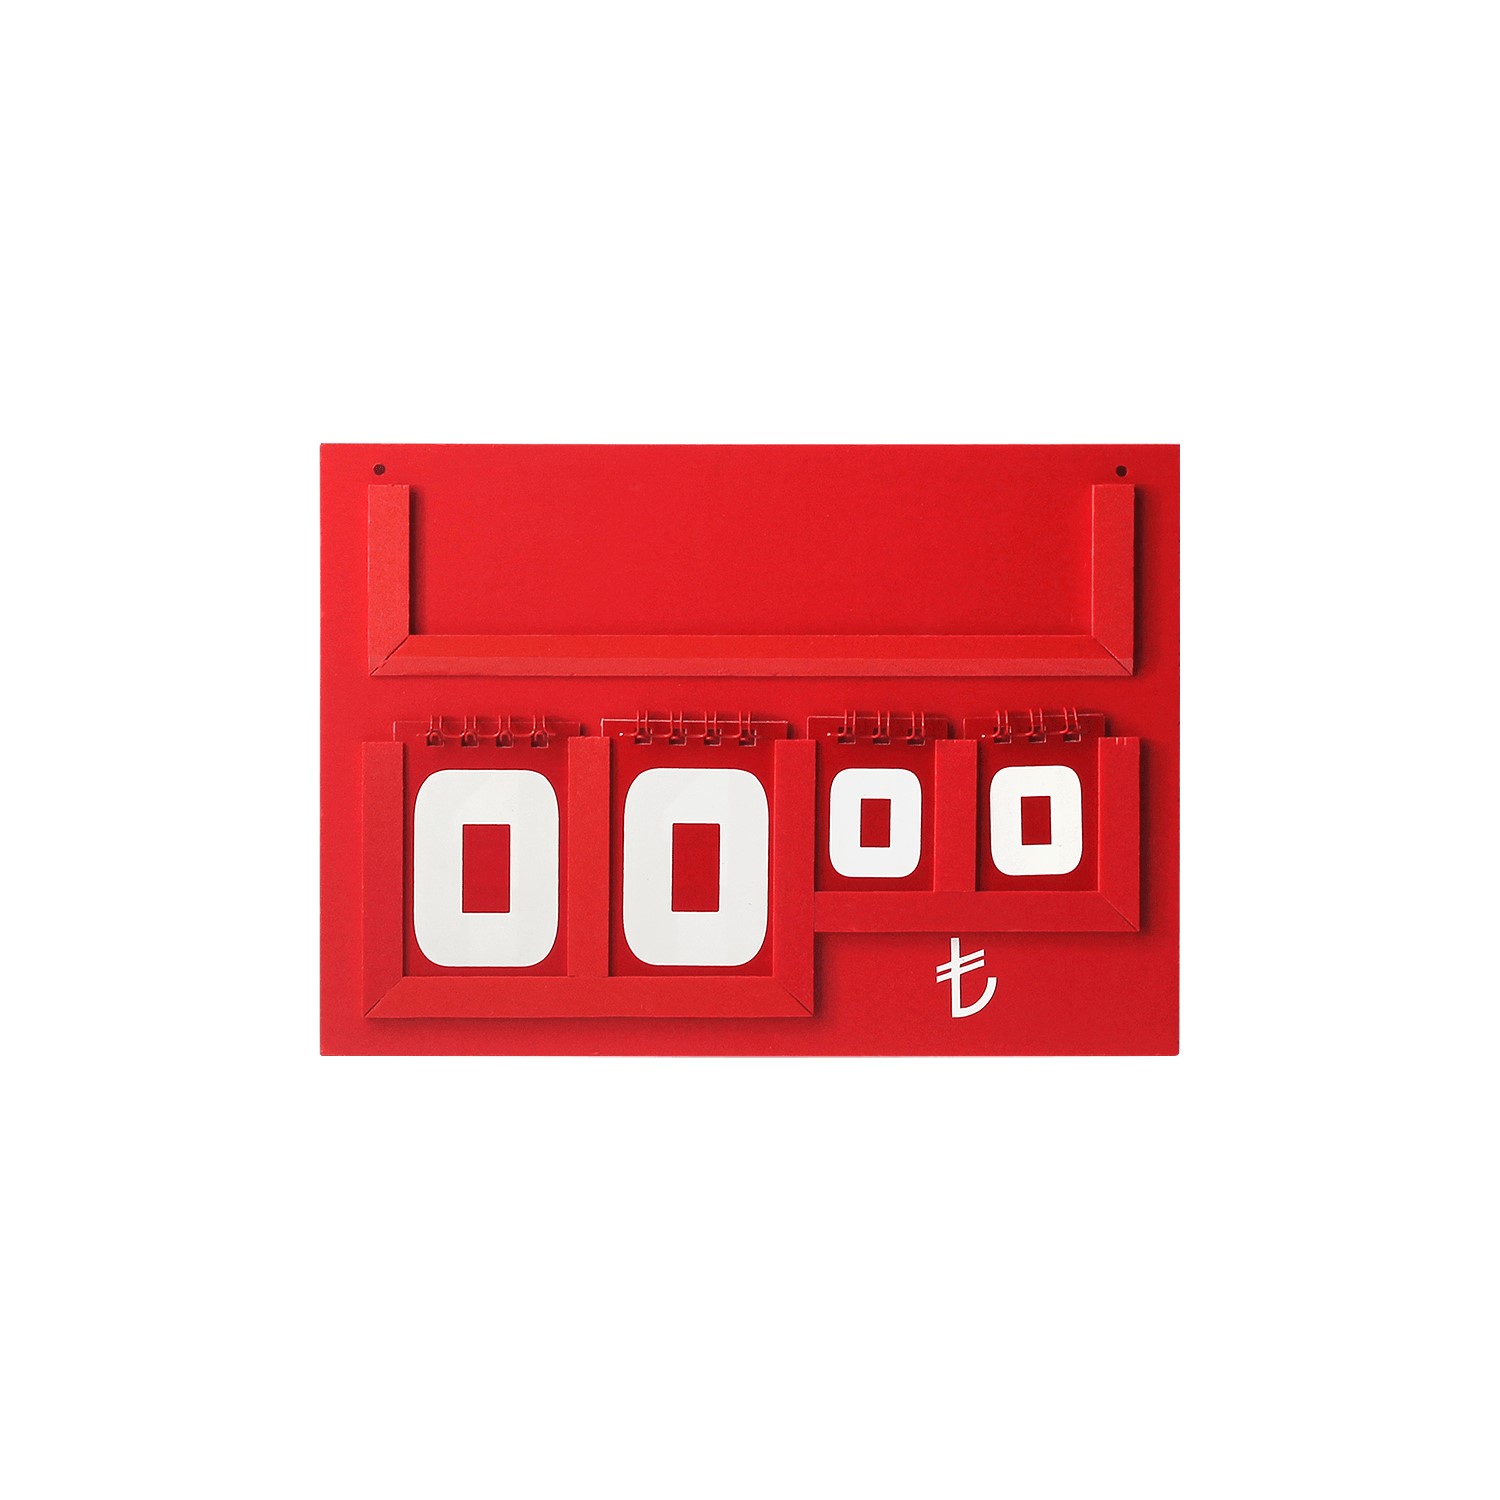 Yazılı Manav Etiketi Maxi Tek Taraflı 15x21 cm Kırmızı -1.jpg (132 KB)